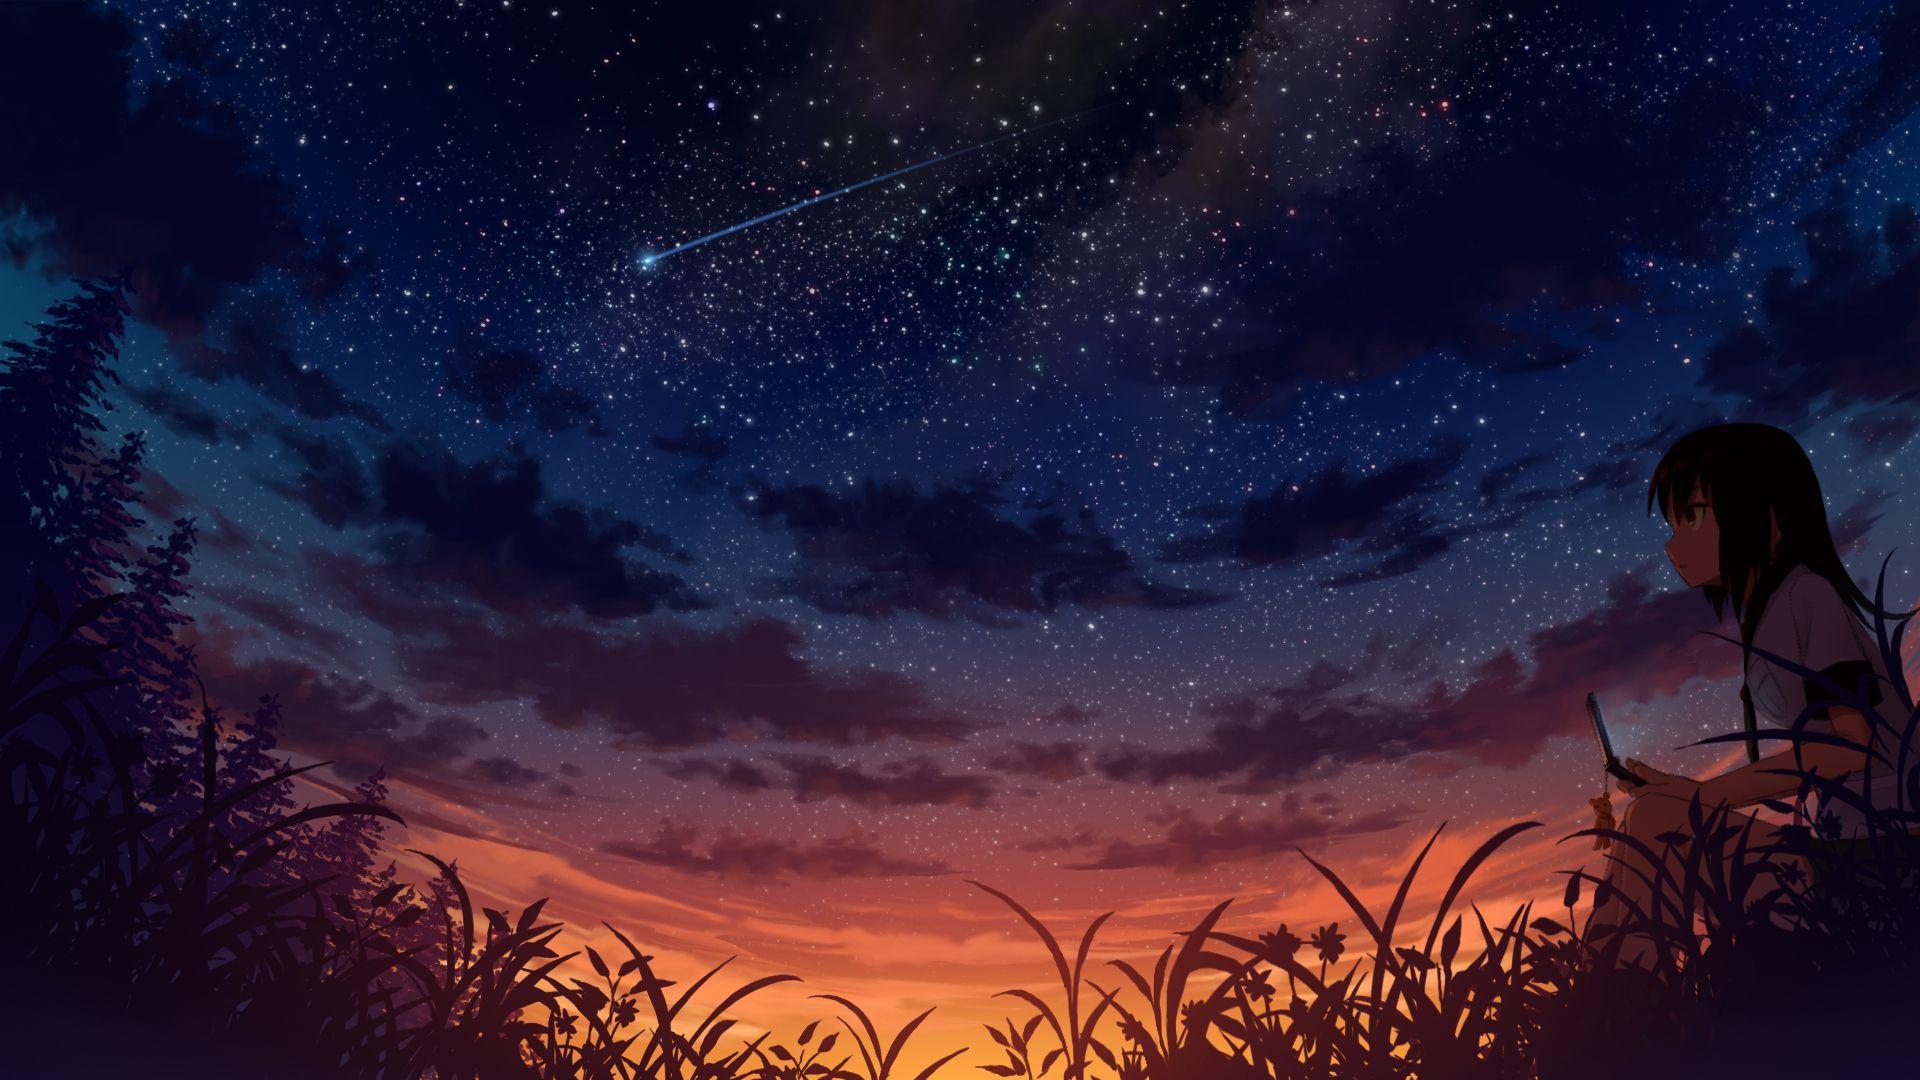 Anime with beautifulmesmerizing night scenery  Forums  MyAnimeListnet